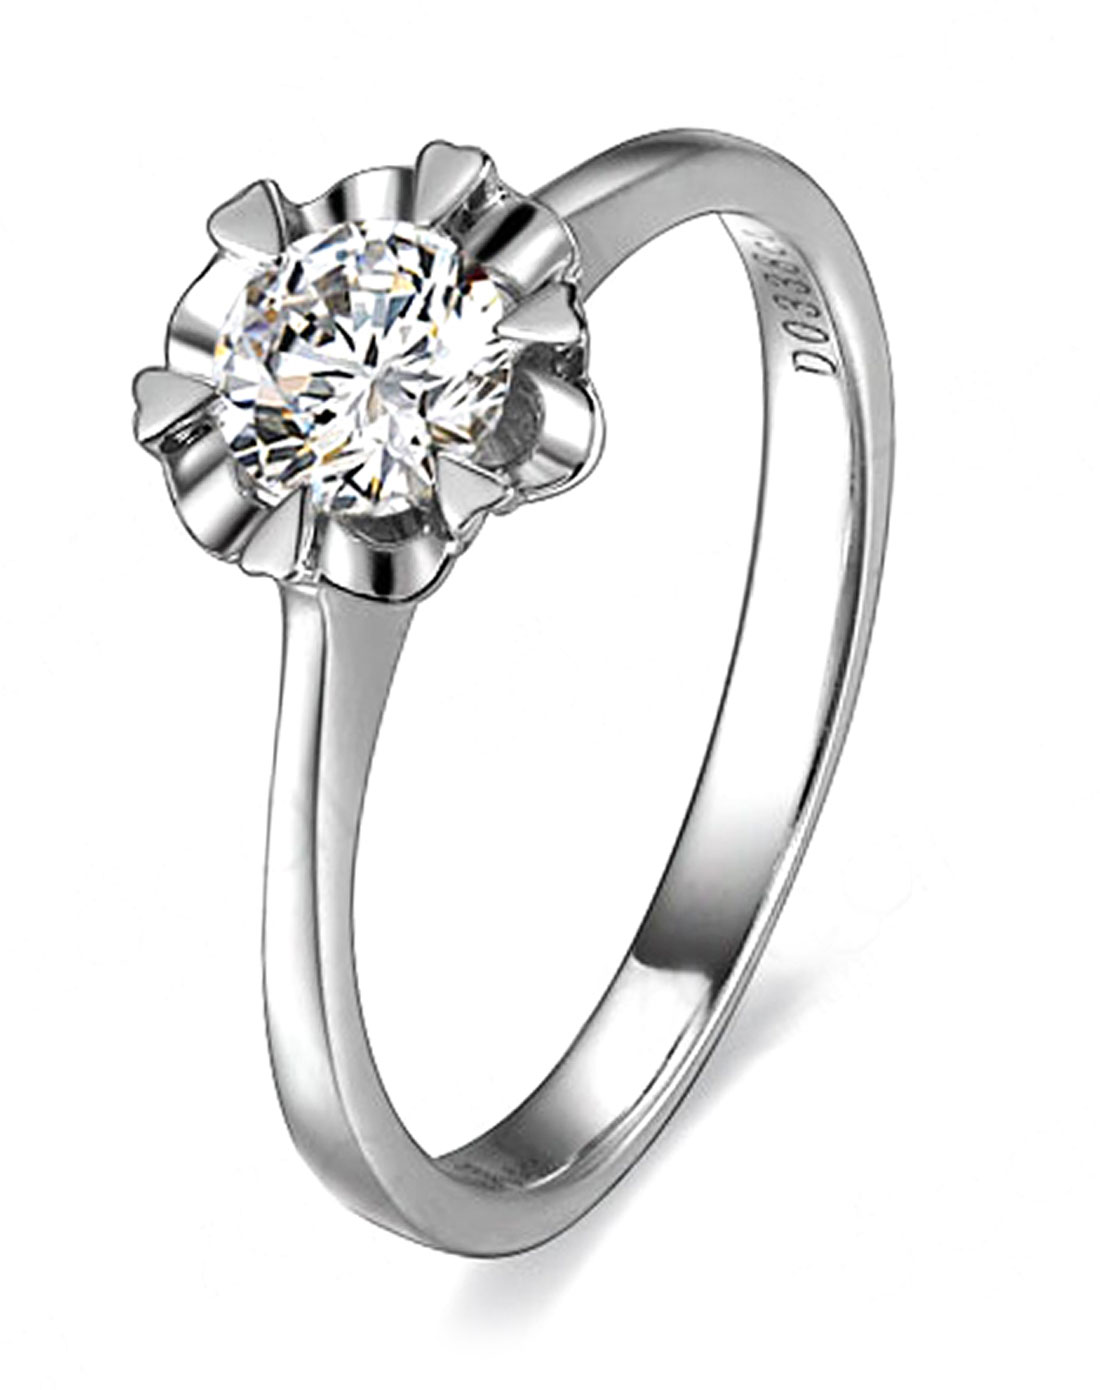 还有一种群镶款式的钻石戒指,这种钻石戒指款式的寓意是爱你就要爱上